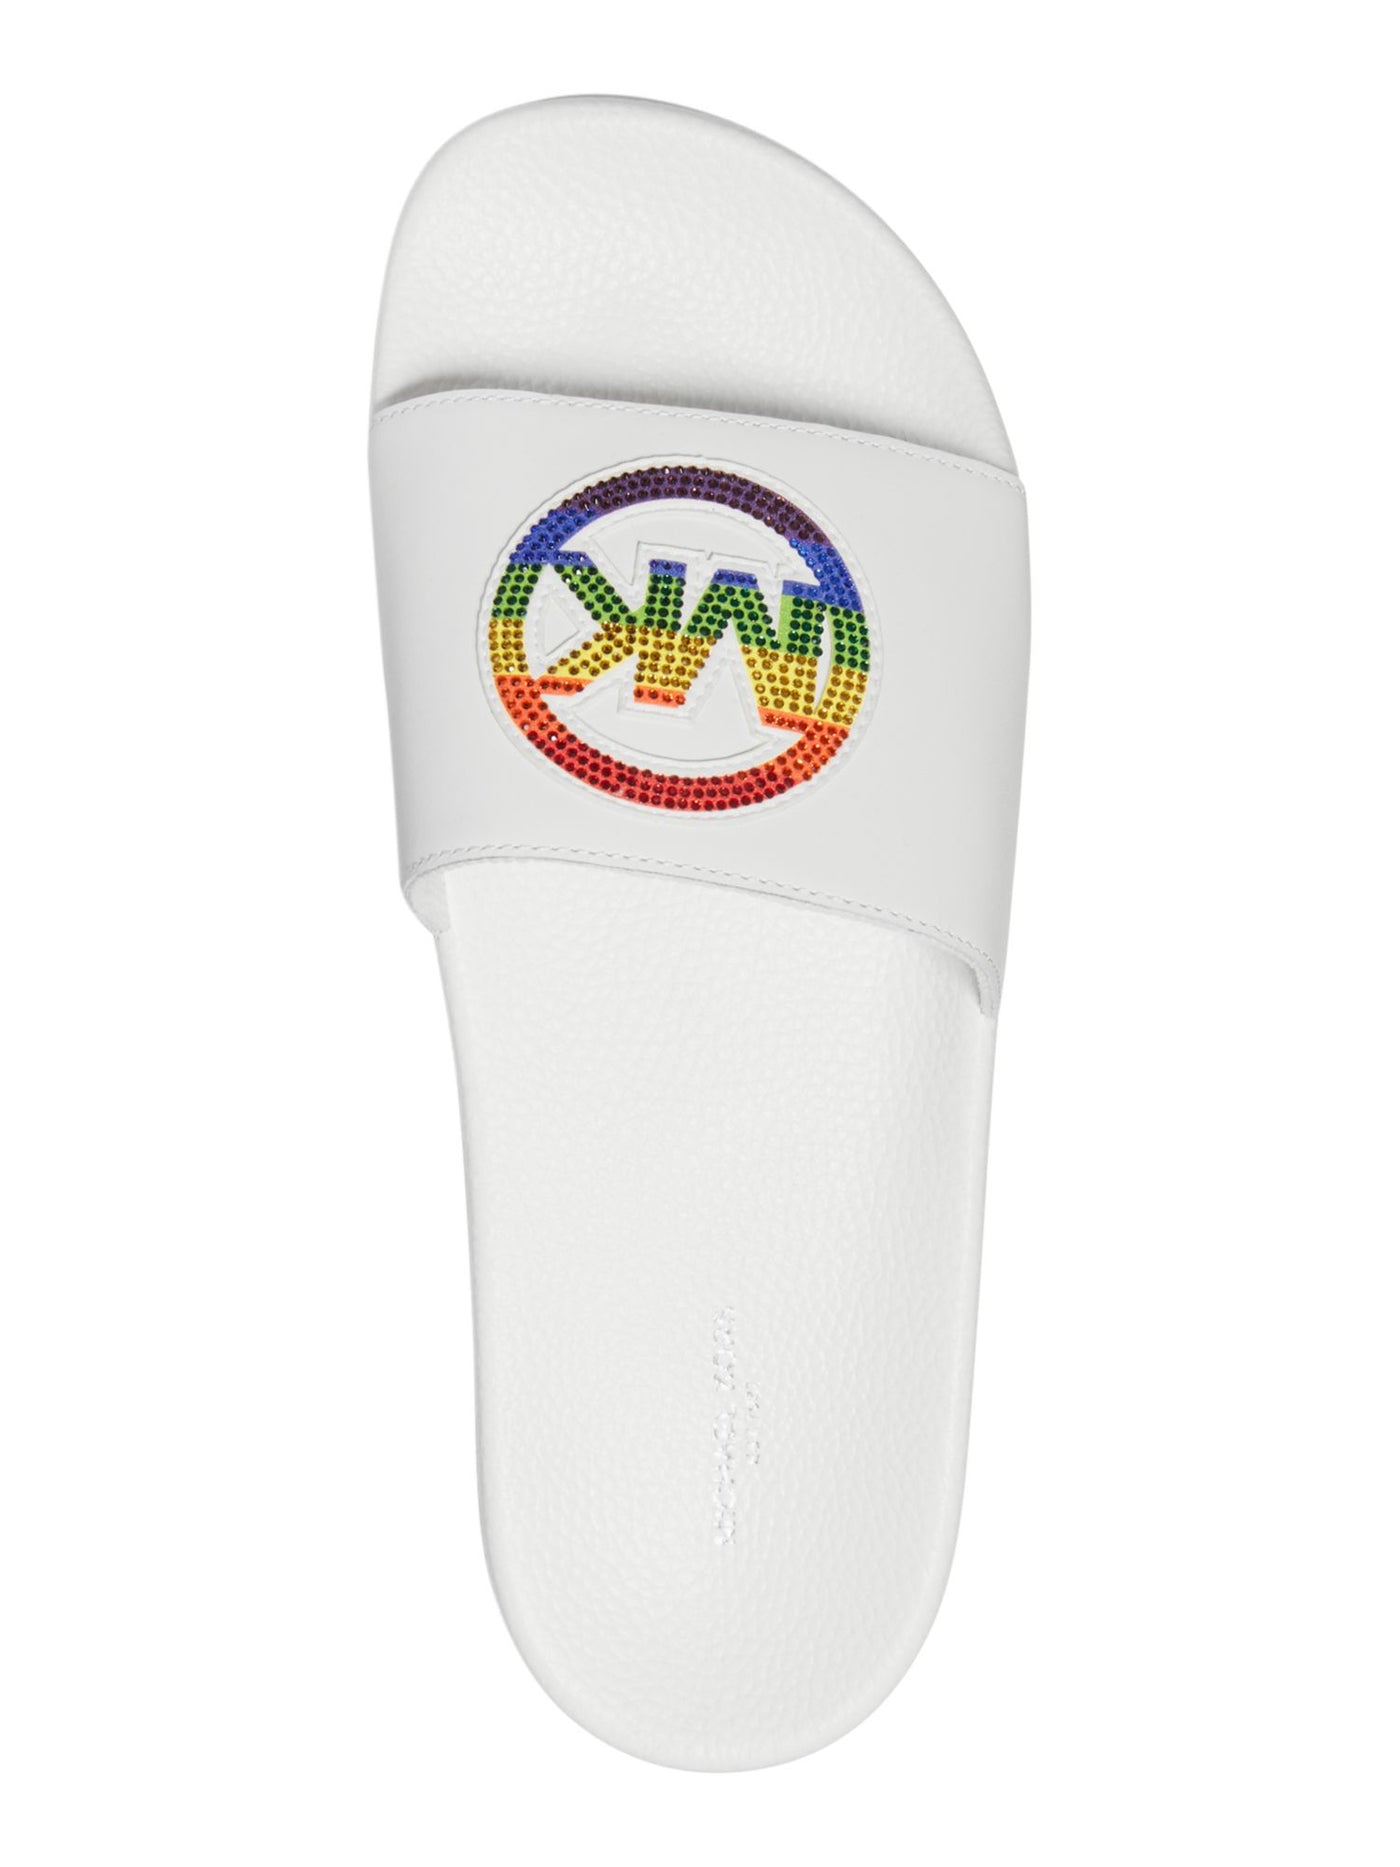 MICHAEL KORS Mens White Mixed Media Embellished Comfort Jake Round Toe Platform Leather Slide Sandals Shoes 9